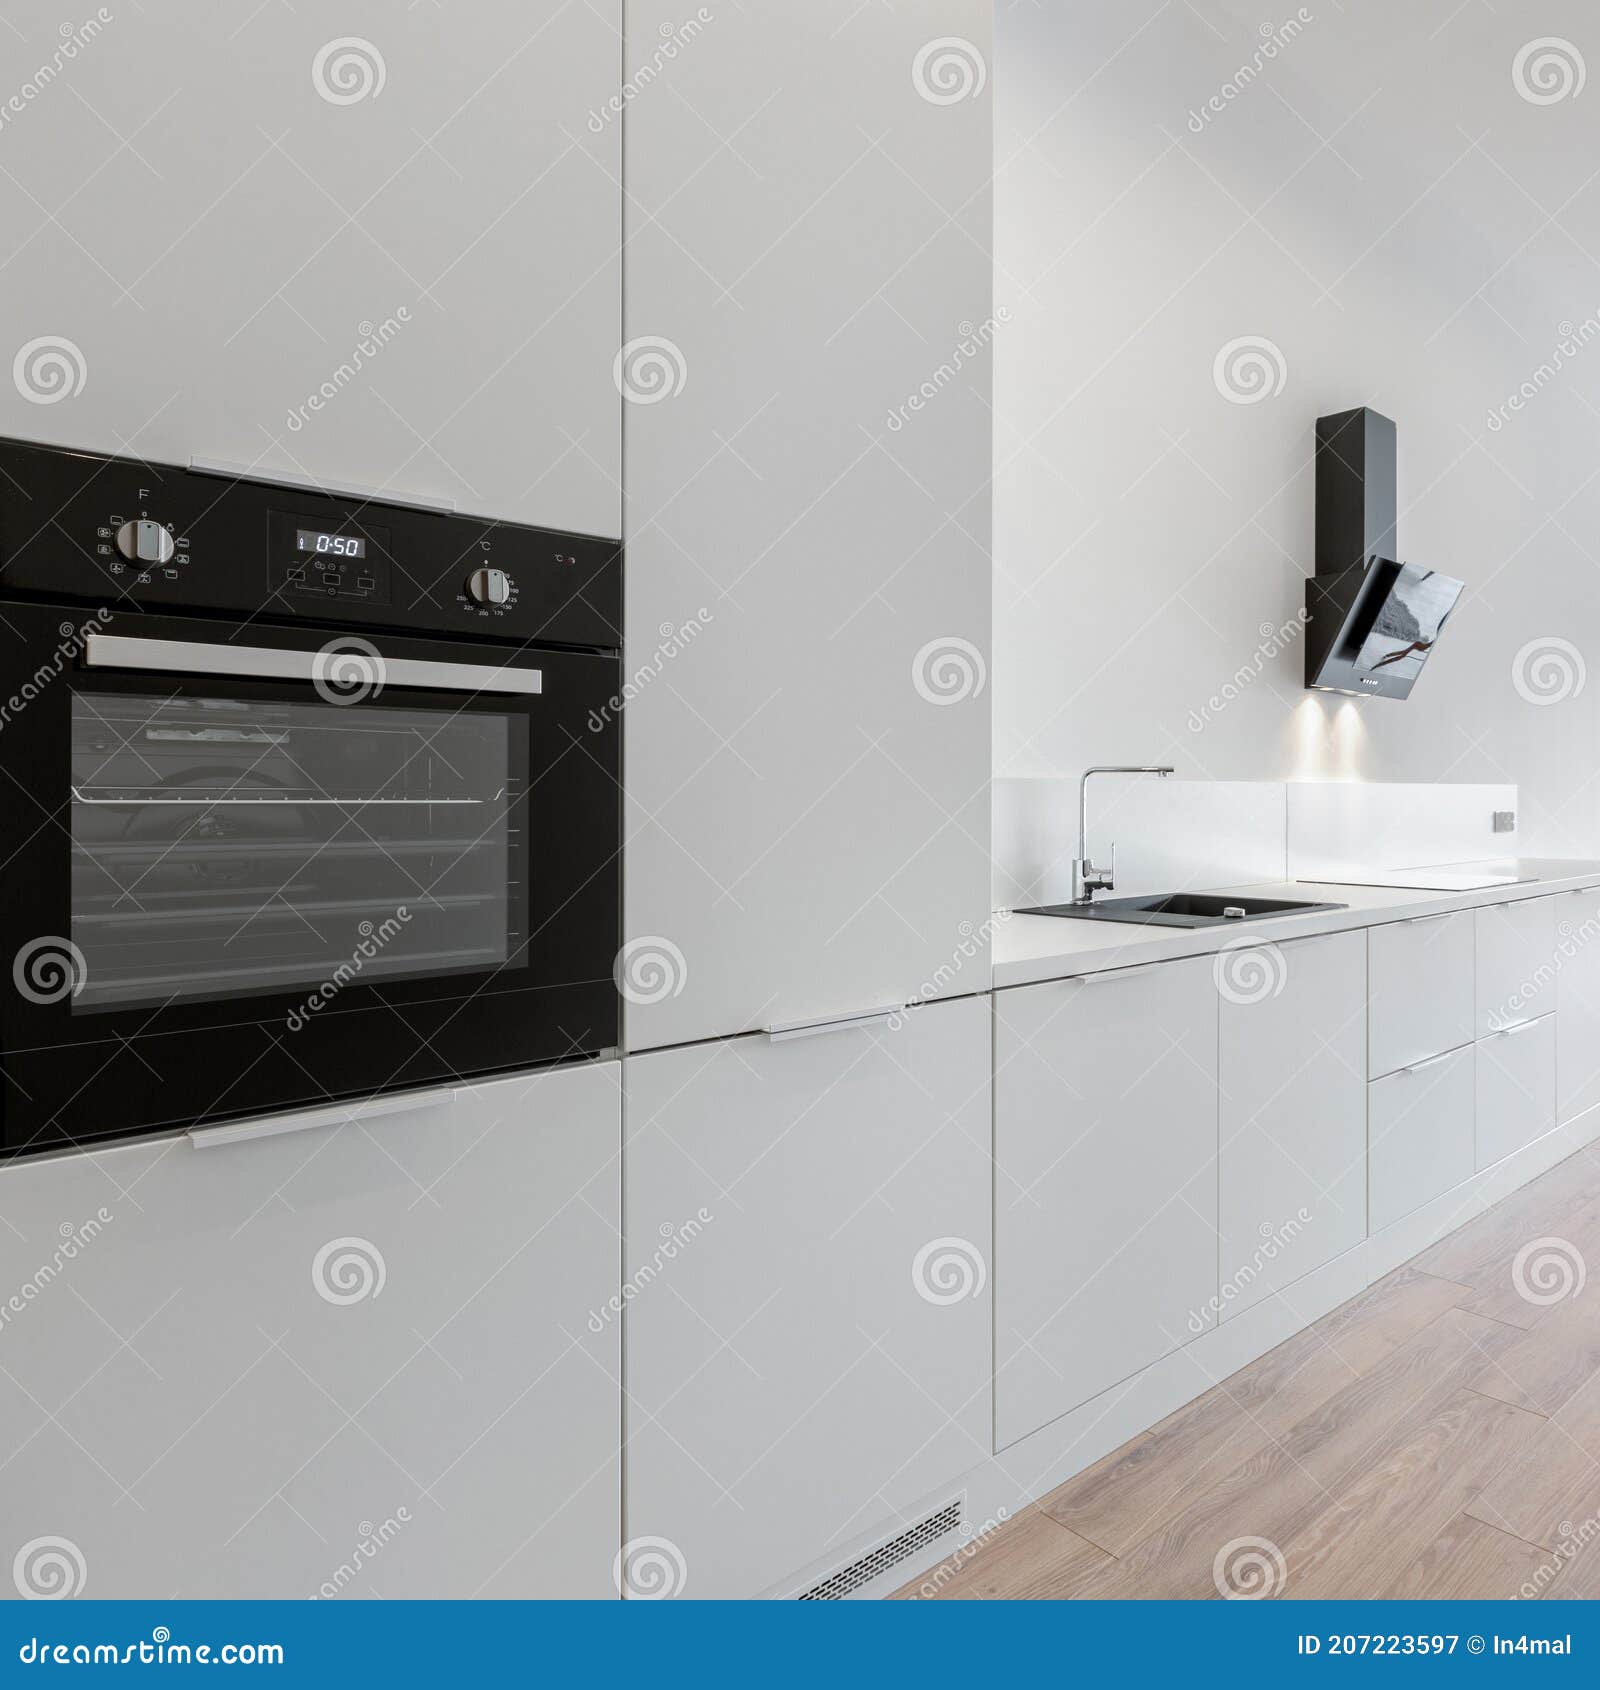 Horno Negro En Cocina Blanca Imagen de archivo - Imagen de extractor,  interior: 207223597